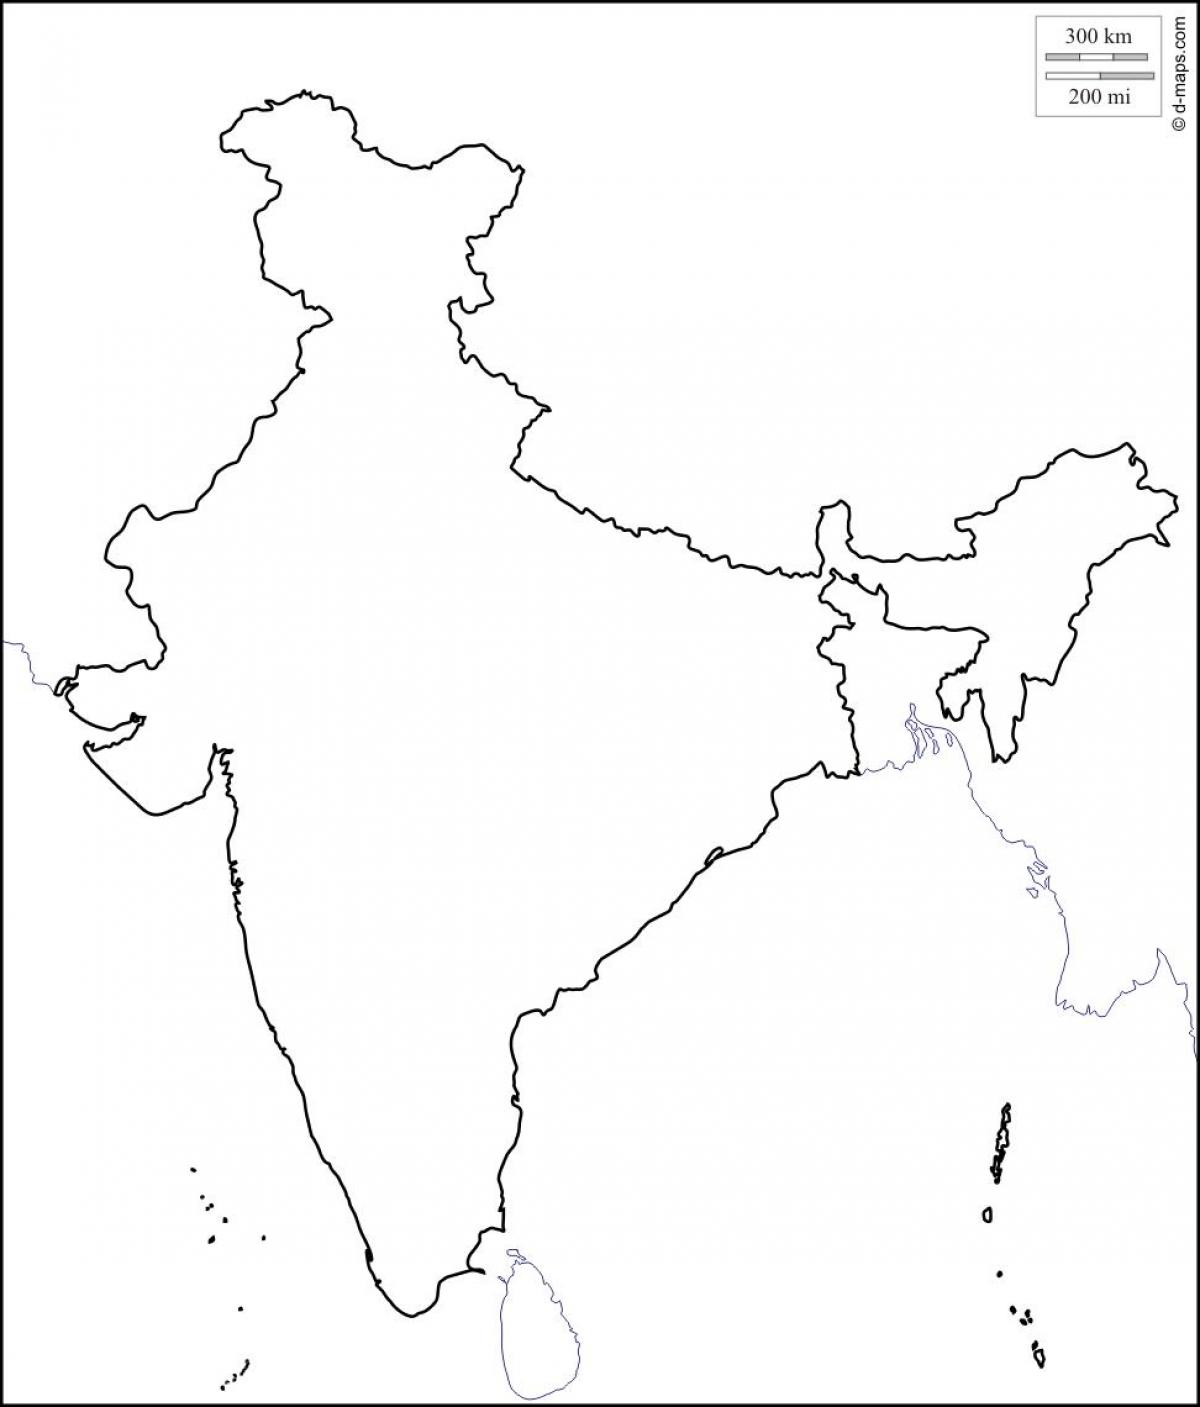 भारत का नक्शा रूपरेखा 